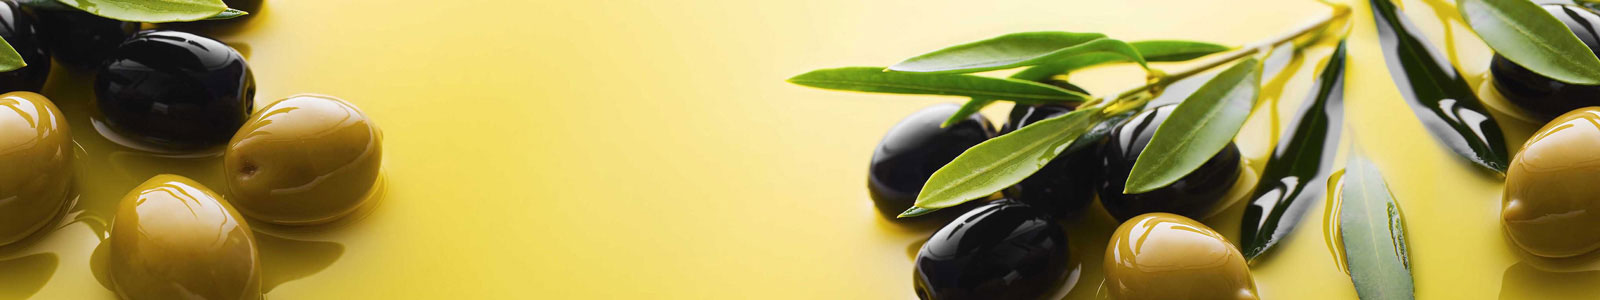 №5983 - Аппетитные оливки в масле